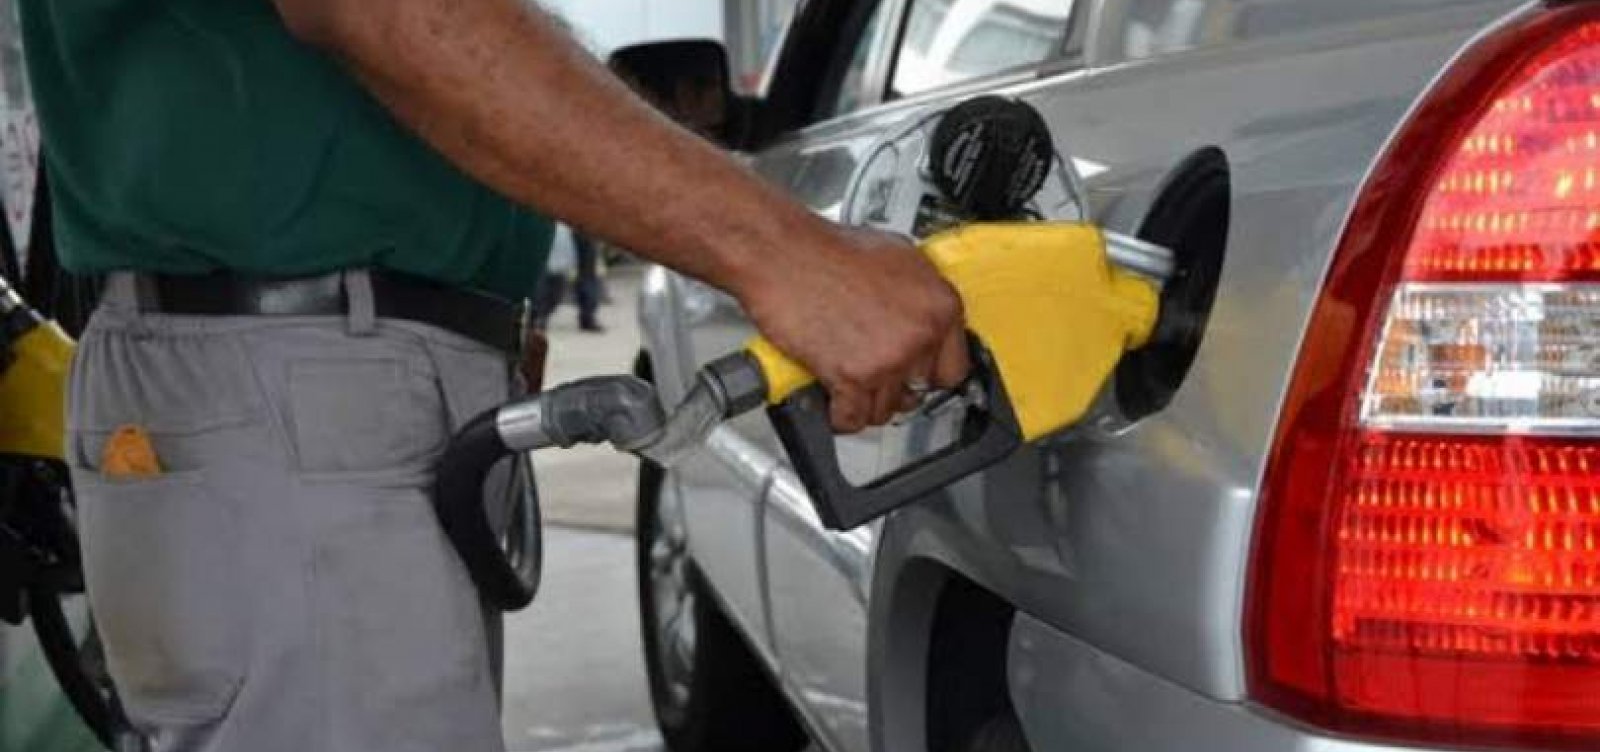 Bahia é o estado com a terceira gasolina mais cara do Brasil